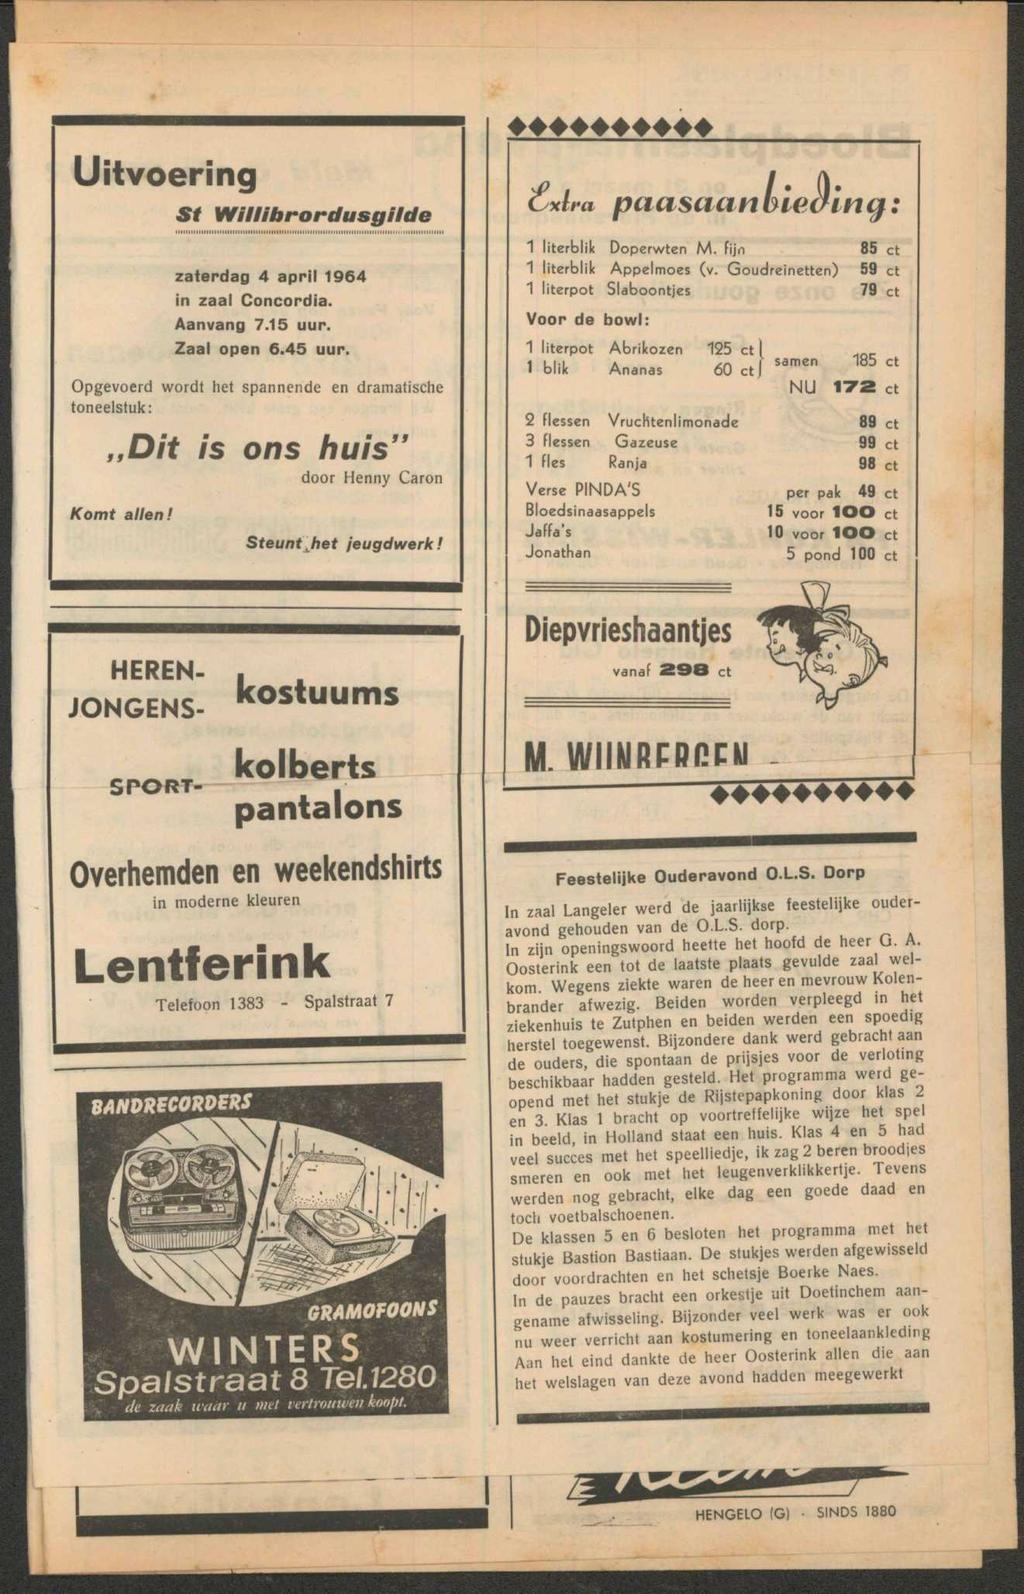 Uitvoering St Willibrordusgilde paasaan uitj: zaterdag 4 april 1964 in zaal Concordia. Aanvang 7.15 uur. Zaal open 6.45 uur.